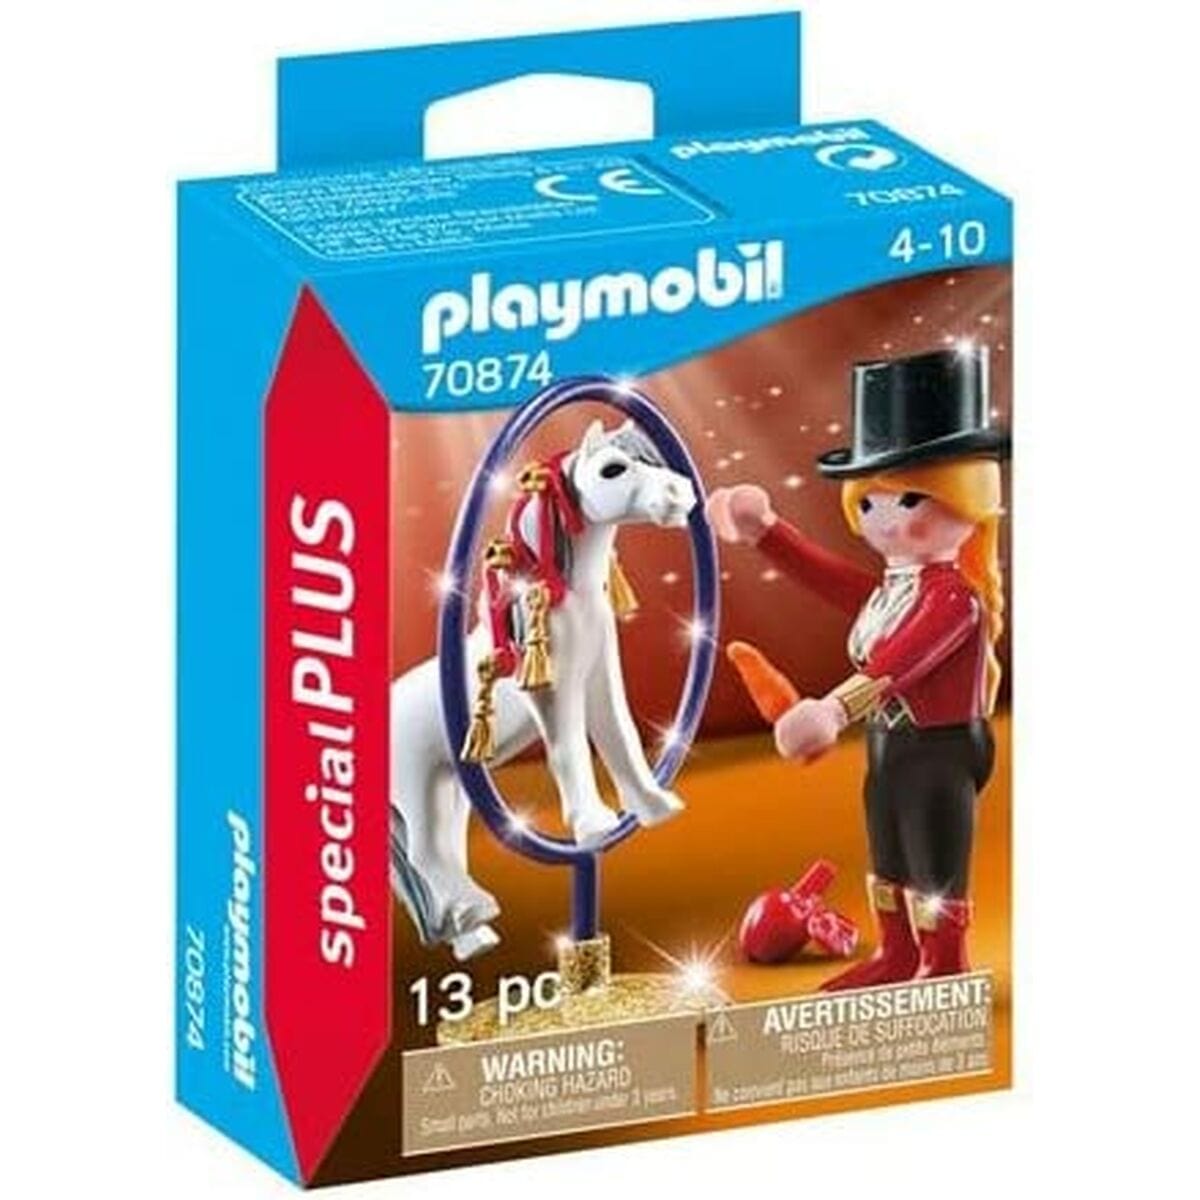 Playmobil Spielzeug | Kostüme > Spielzeug und Spiele > Weiteres spielzeug Playset Playmobil 70874 70874 13 Stücke